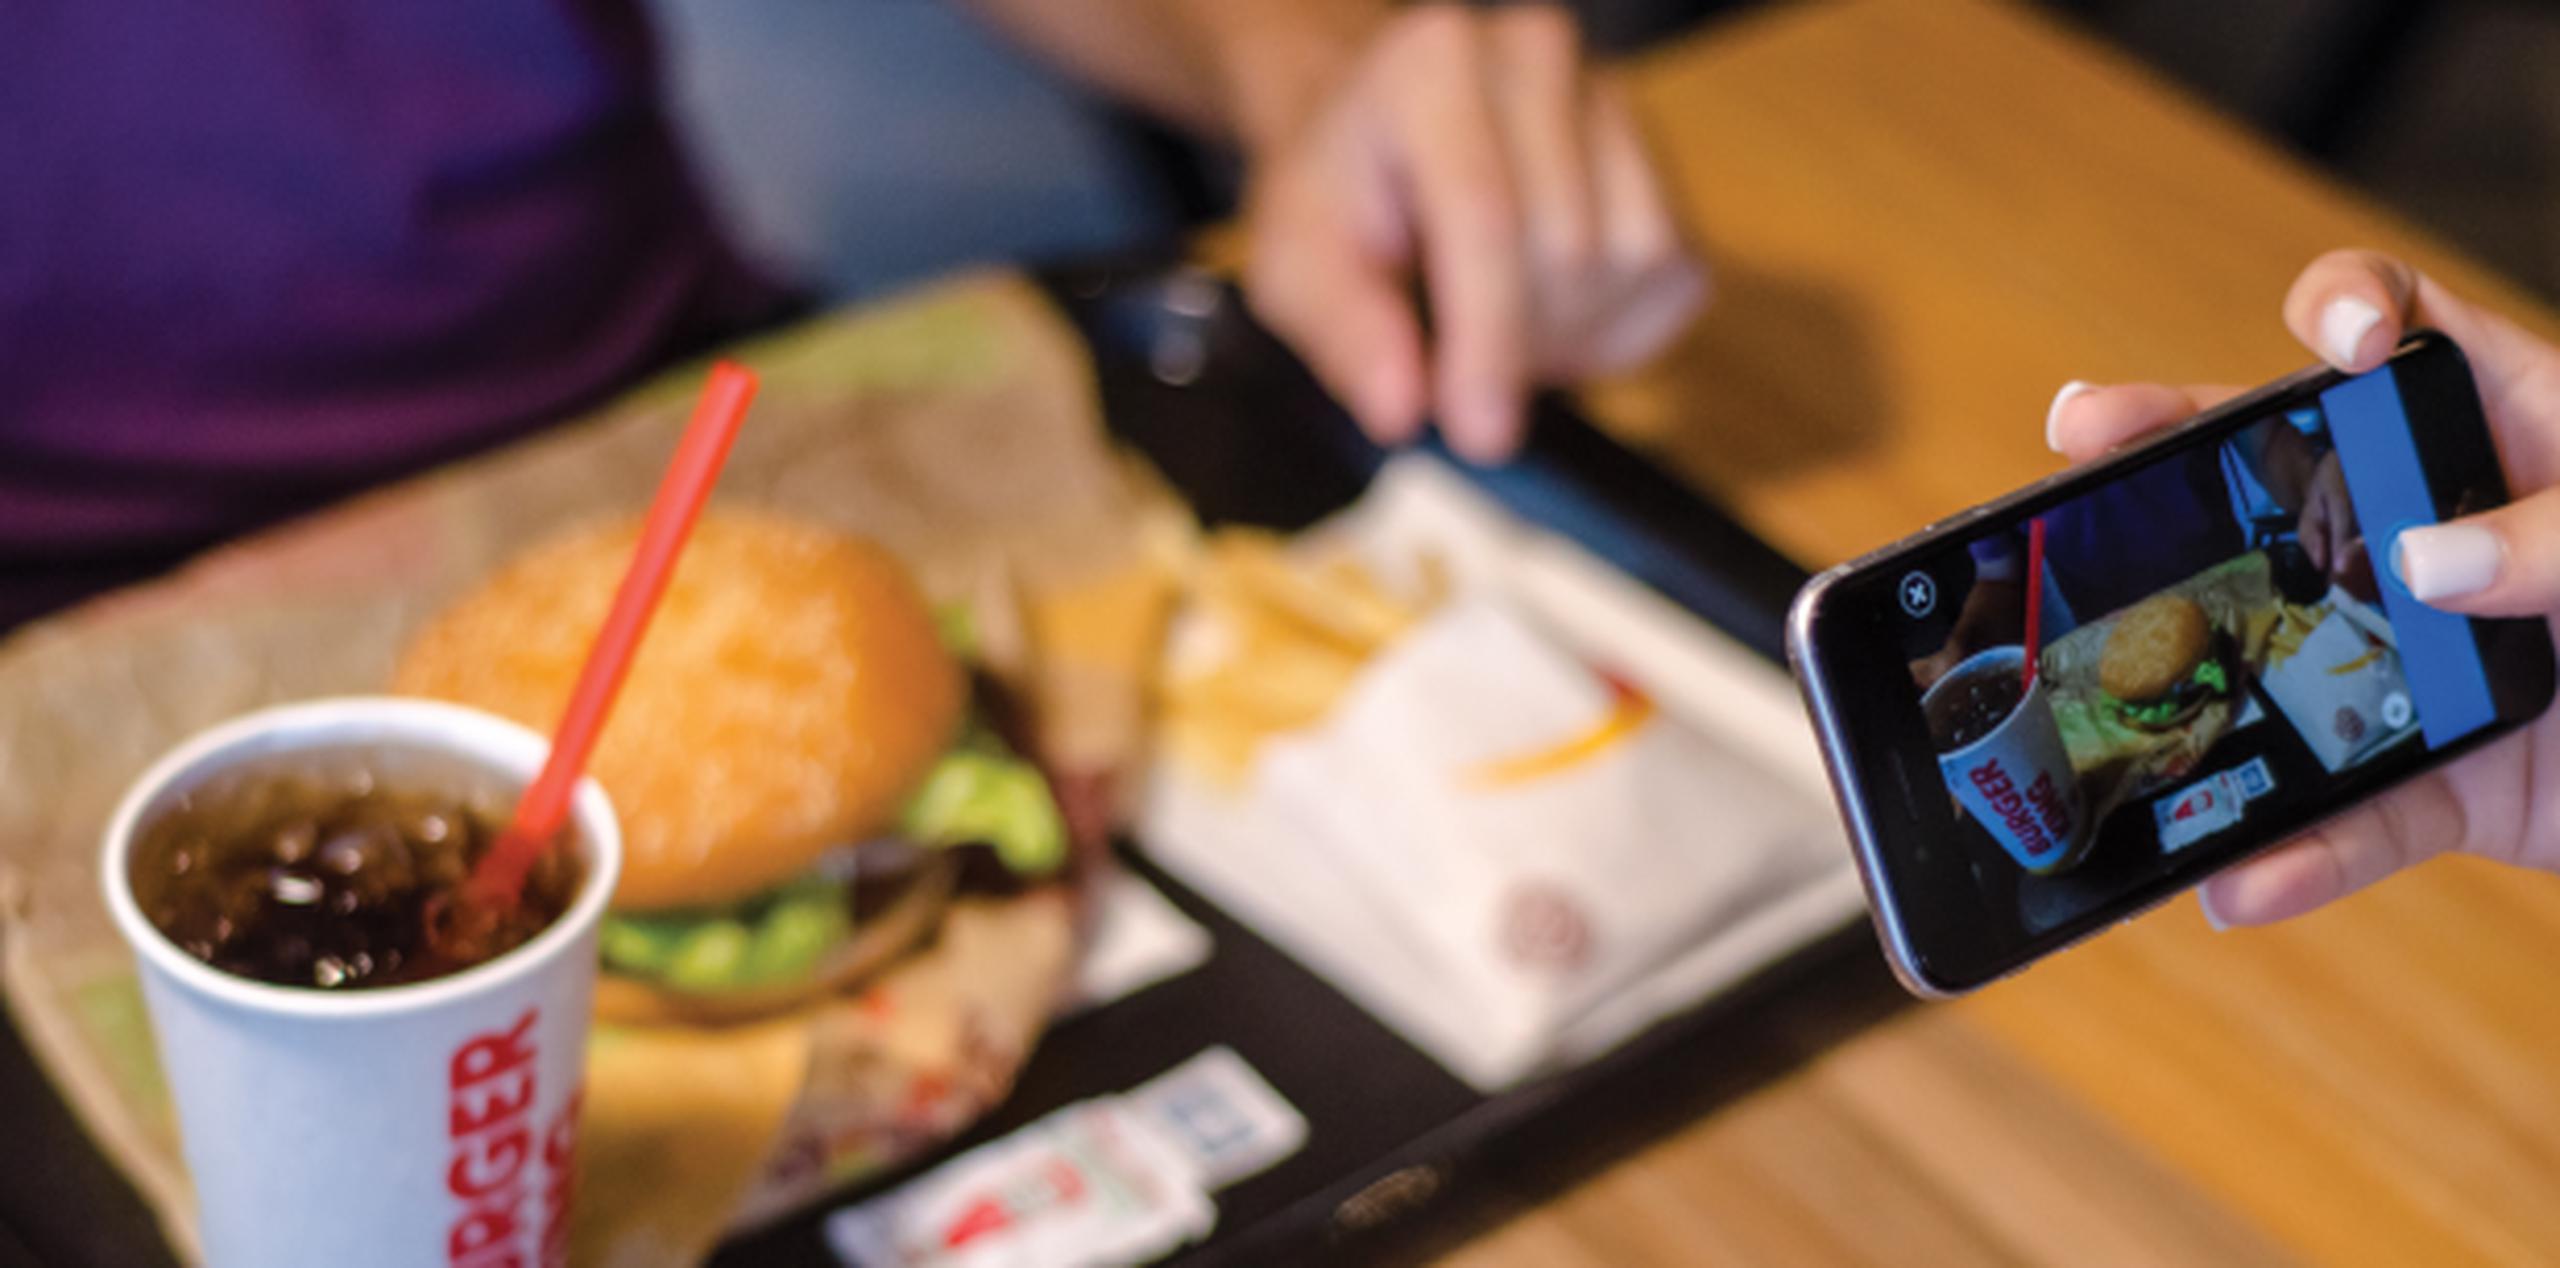 El usuario podrá compartir las mejores fotos tomadas en Burger King y, generará dinero según la cantidad de interacciones -“likes” y “reactions”. (Suministrada)